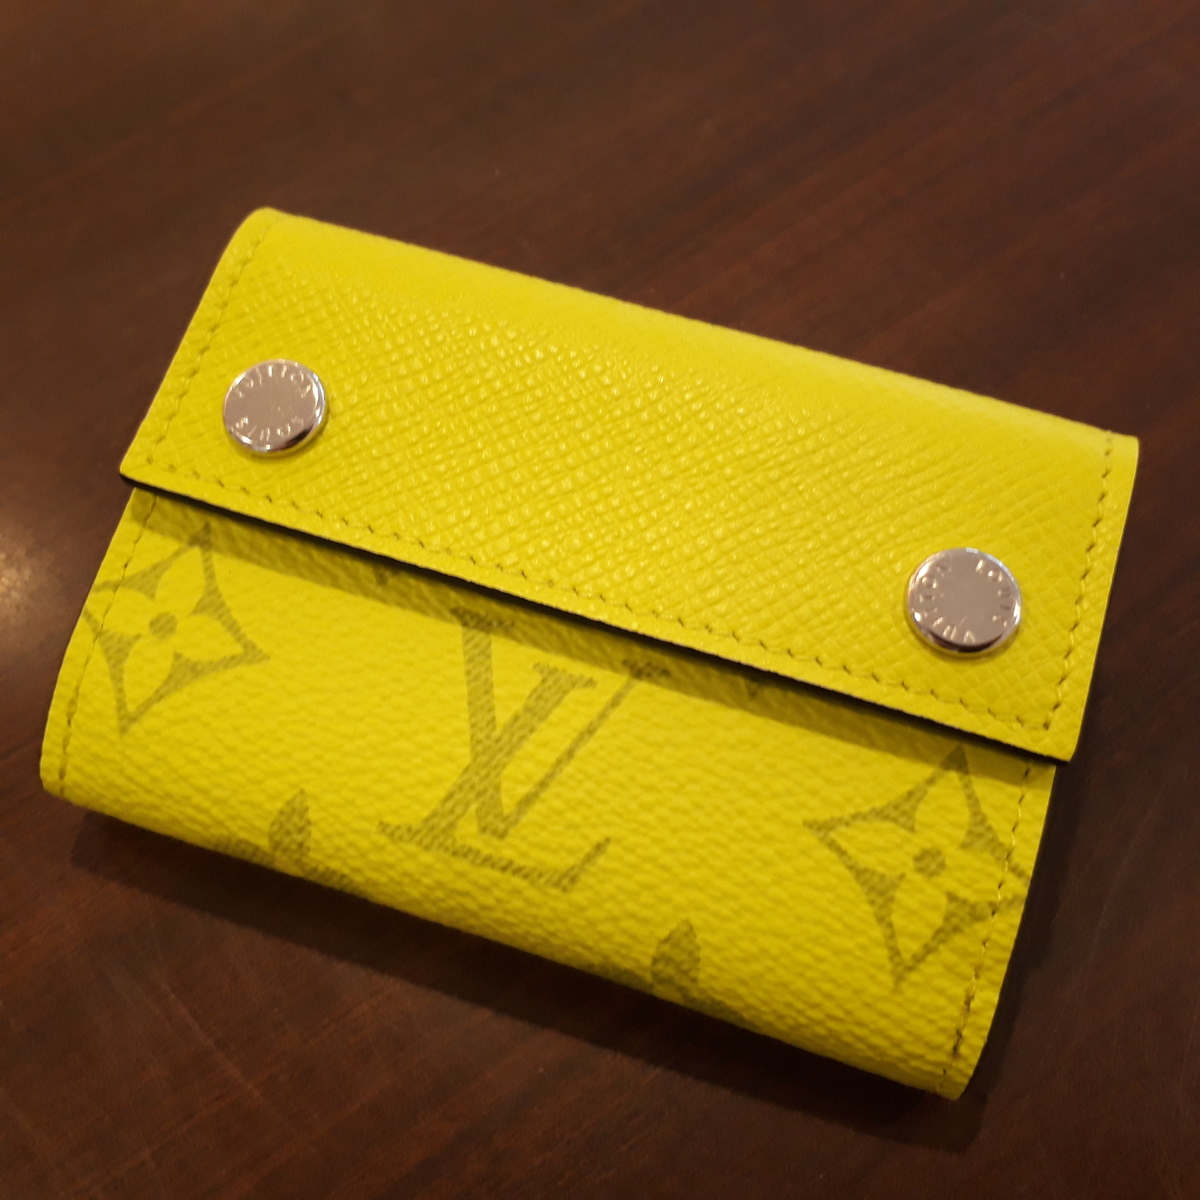 ルイヴィトンのブランド財布のM67629 タイガラマ ディスカバリー 